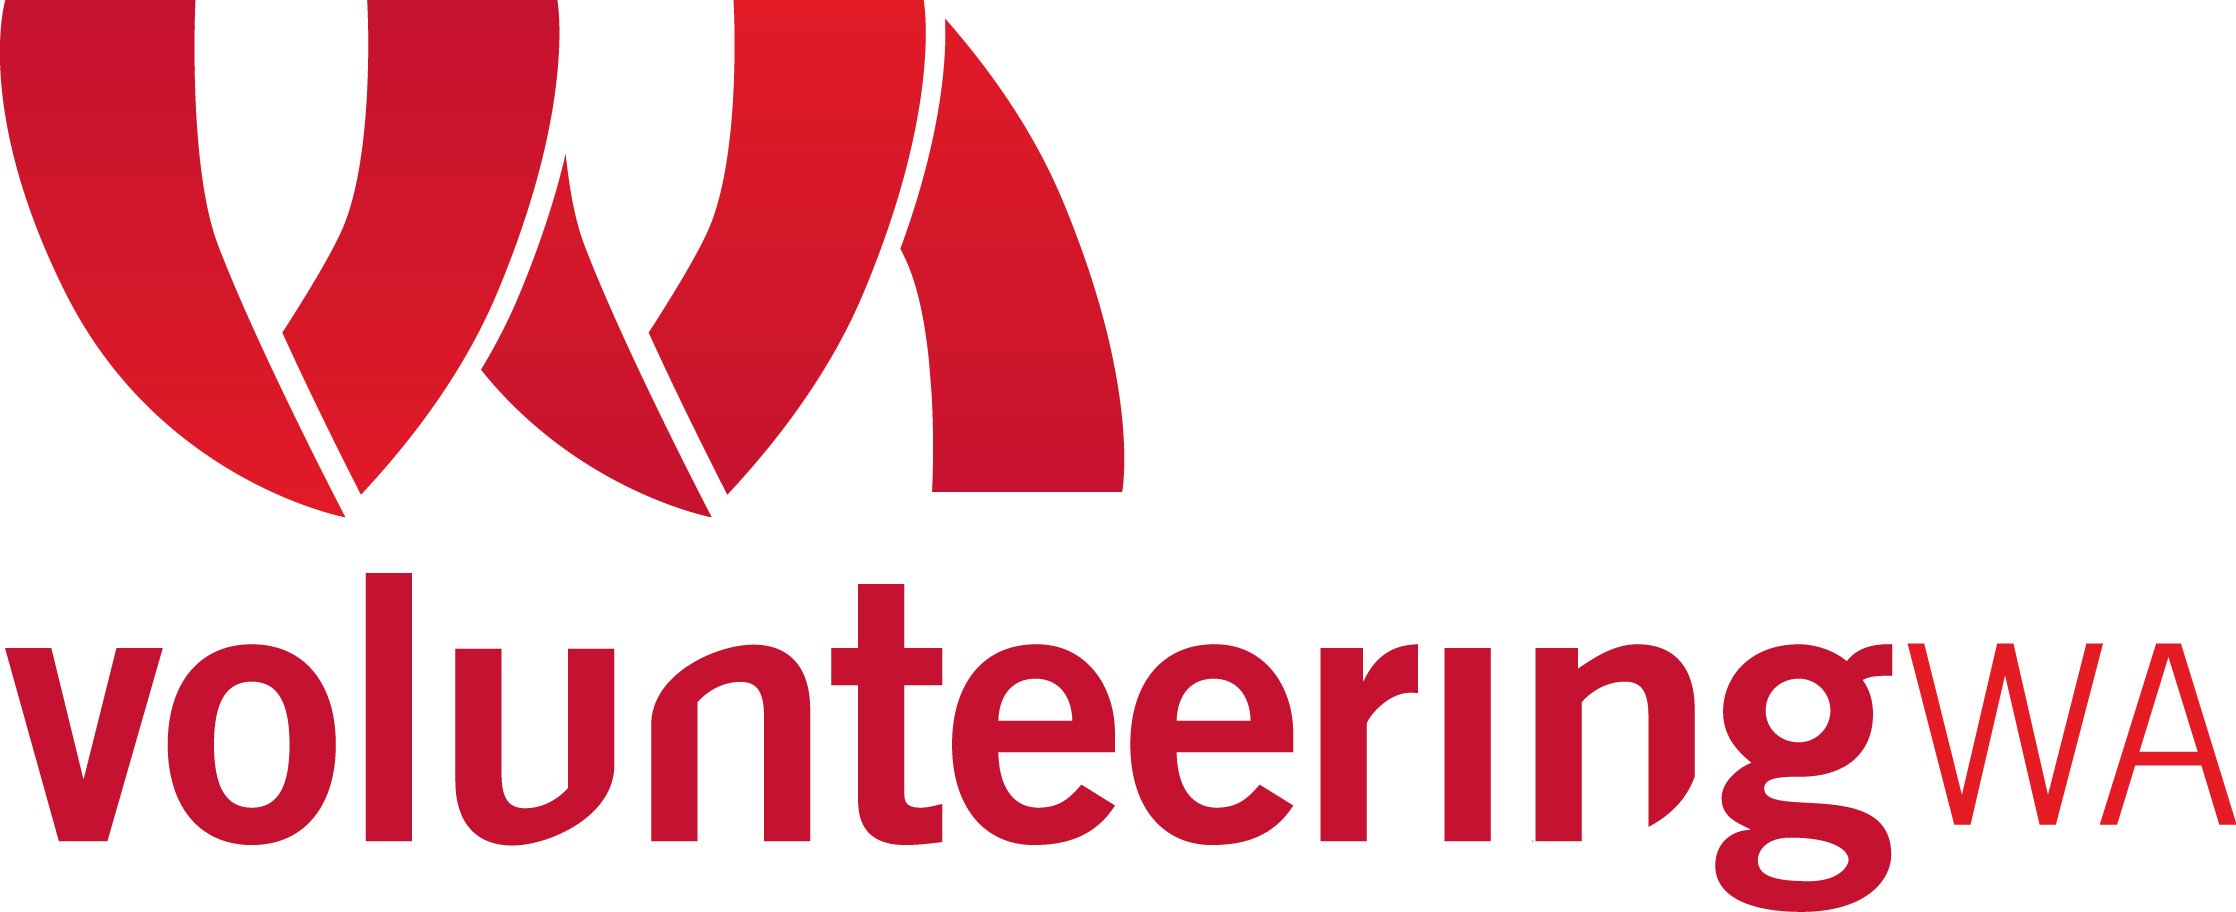 Volunteering_WA_Logo_-_RED.jpg